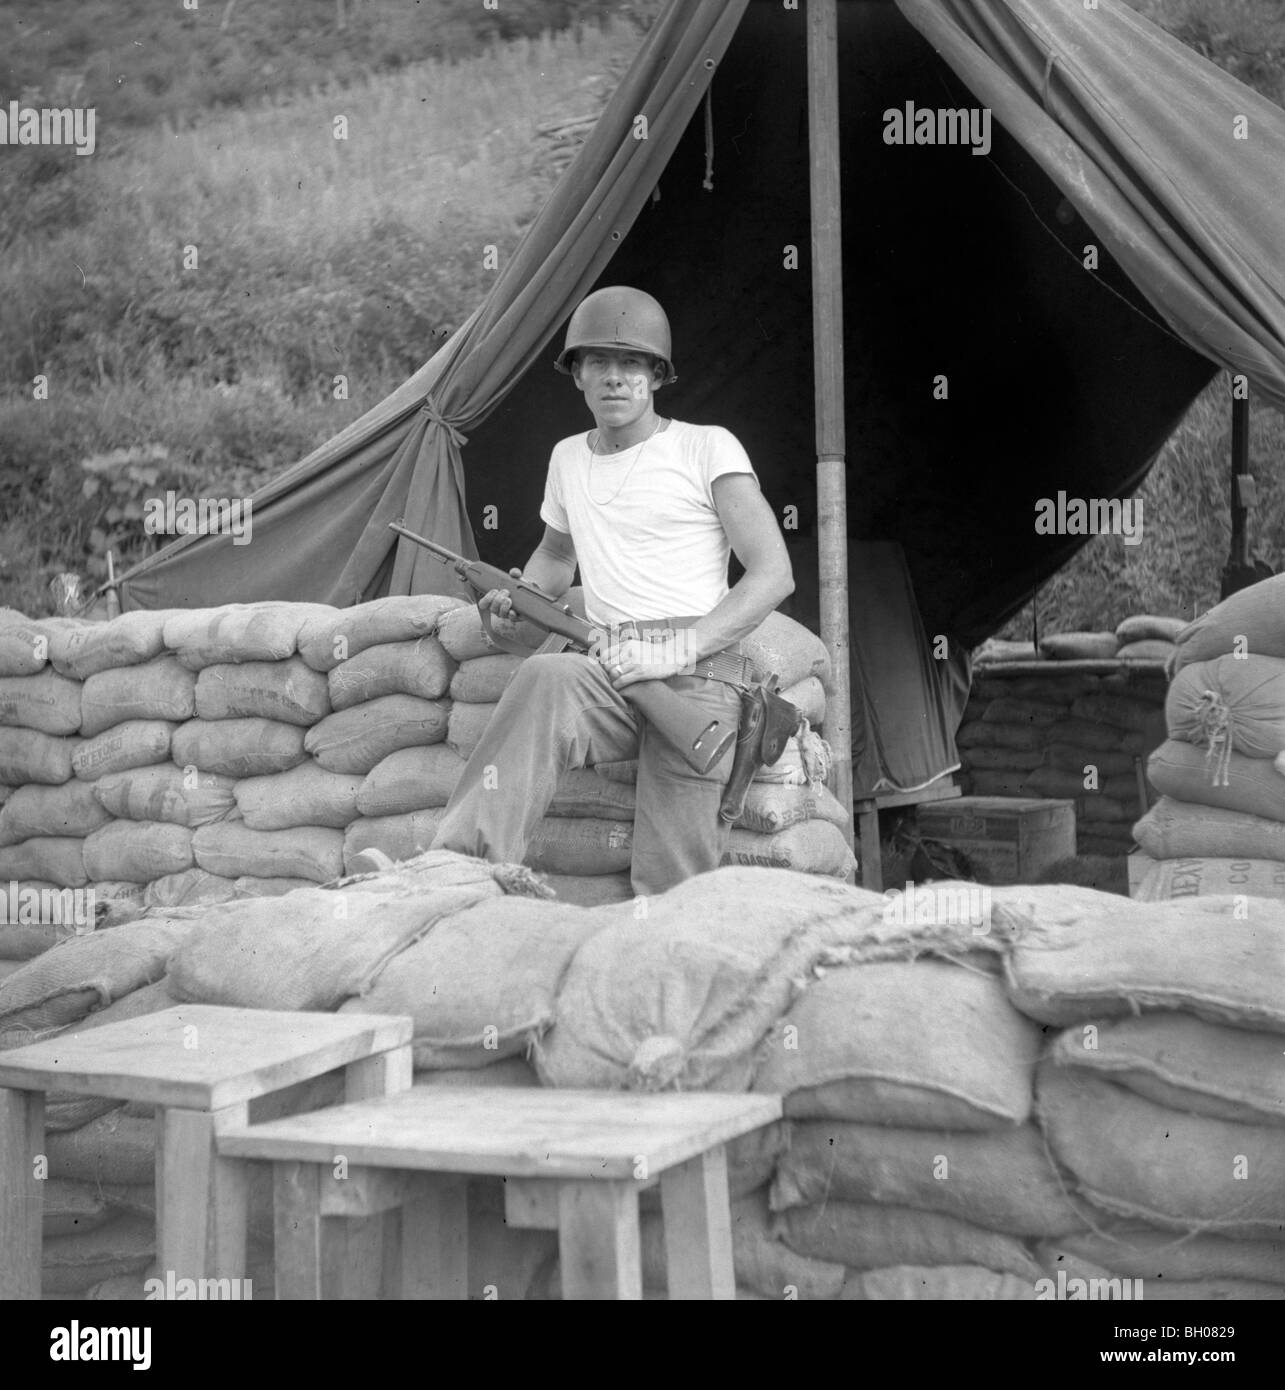 Gli Stati Uniti soldato della seconda divisione di fanteria detiene un M1 fucile mentre in piedi accanto ad una tenda durante la Guerra di Corea. Foto Stock